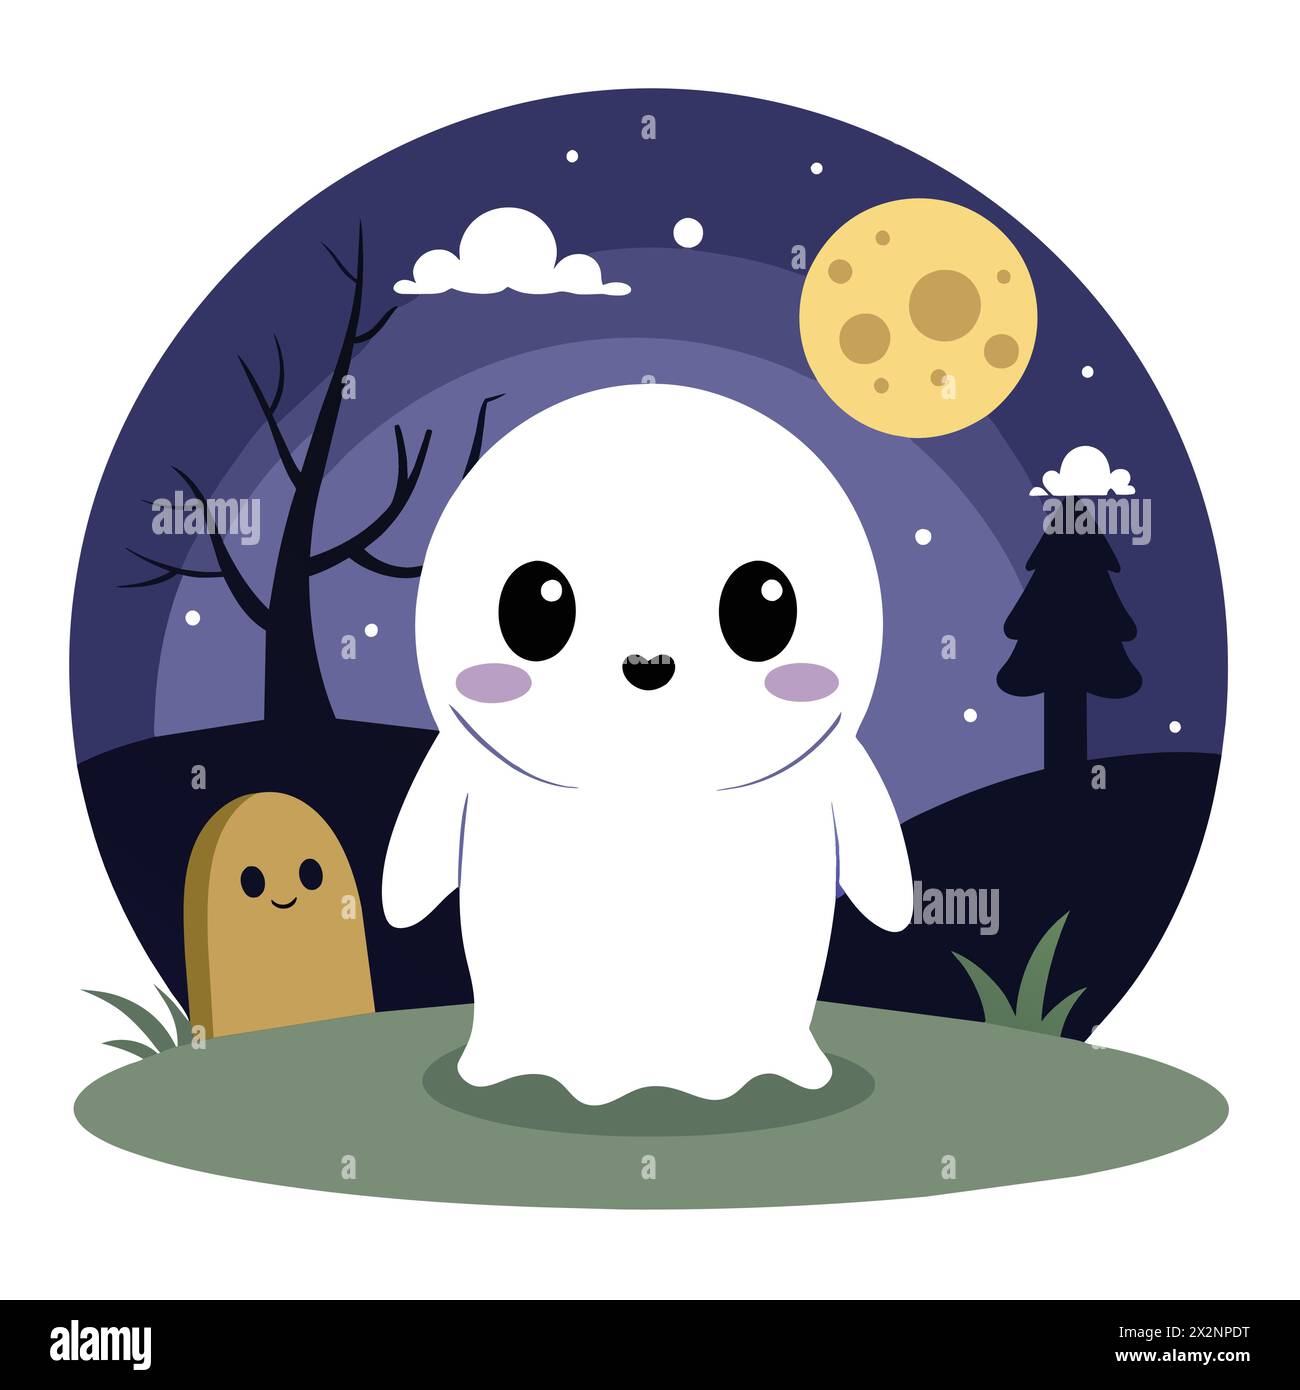 Vecteur fantôme orable AWW Boo, parfait pour Halloween Decor Children's Books Cards invitations logos Web Design T-shirts cartes de voeux Papeterie Illustration de Vecteur